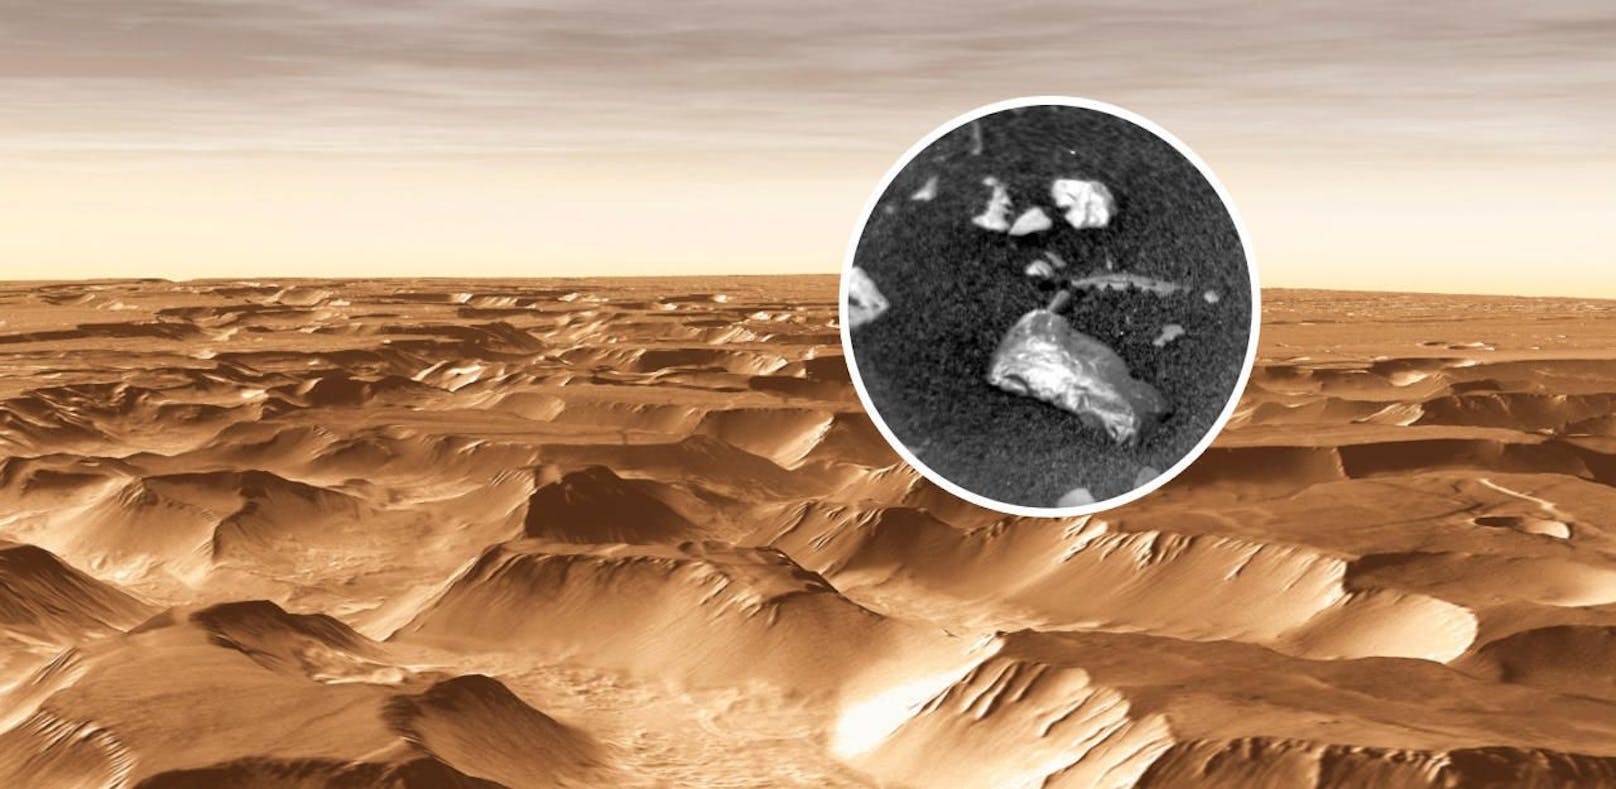 Müll von Aliens auf dem Mars entdeckt?